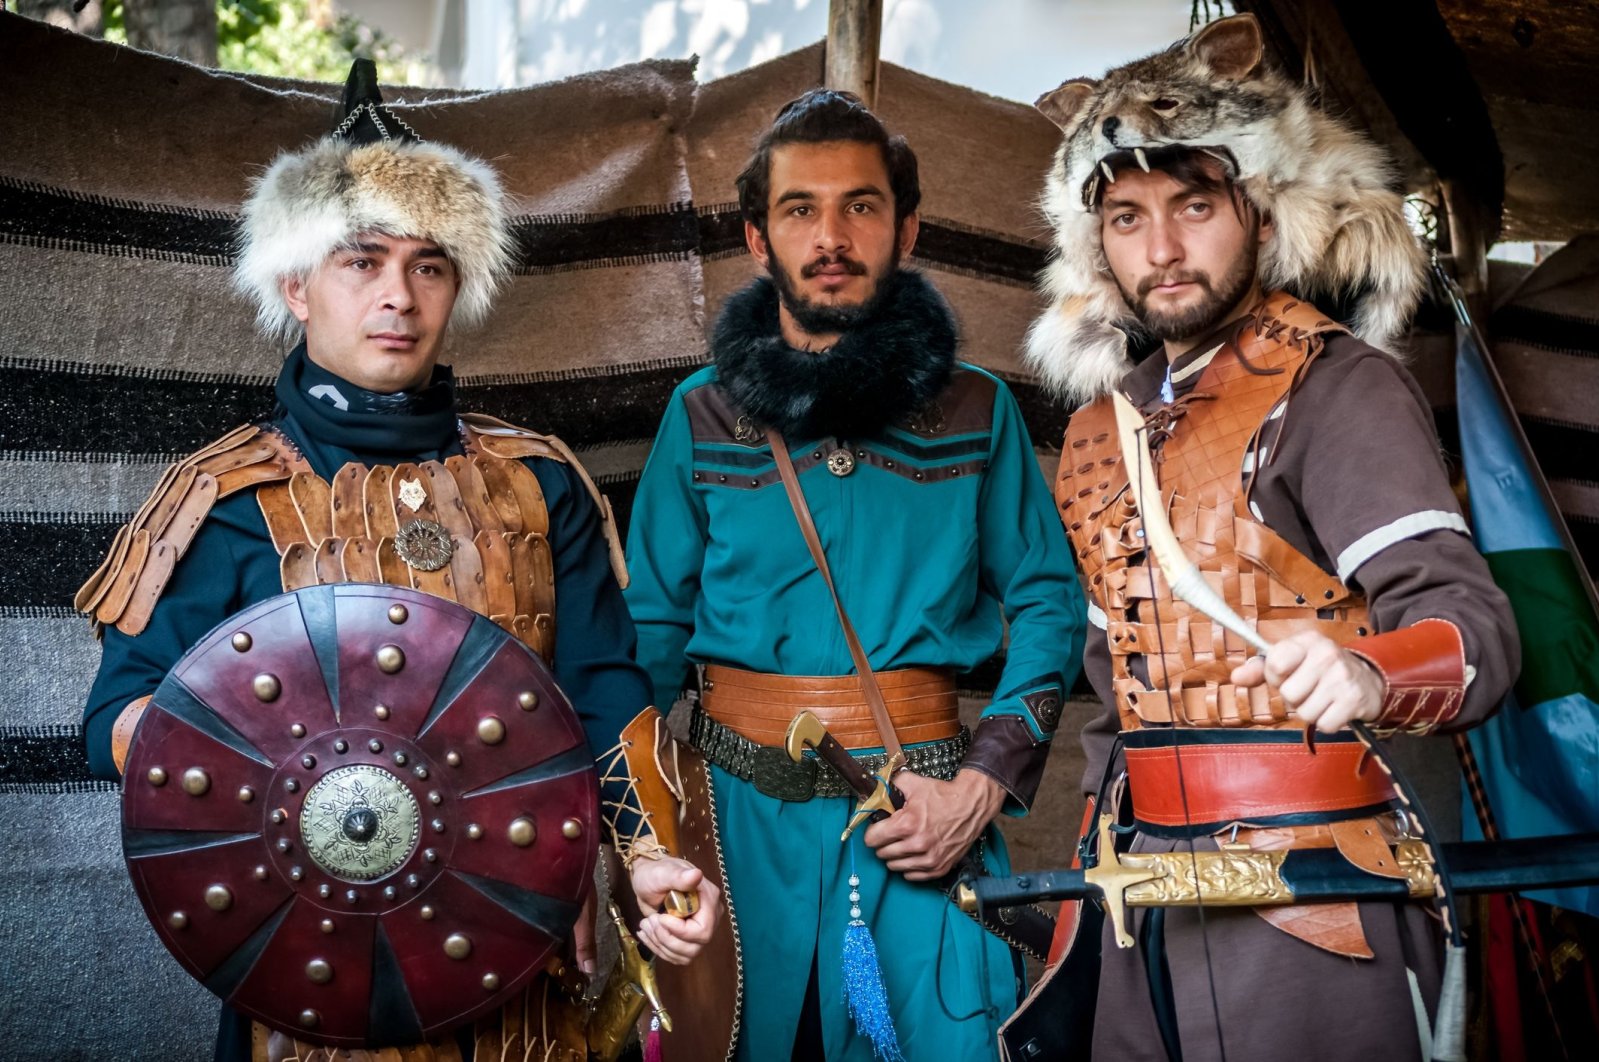 Penghibur dalam bersosialisasi: Wawasan budaya tentang akar pengembara orang Turki